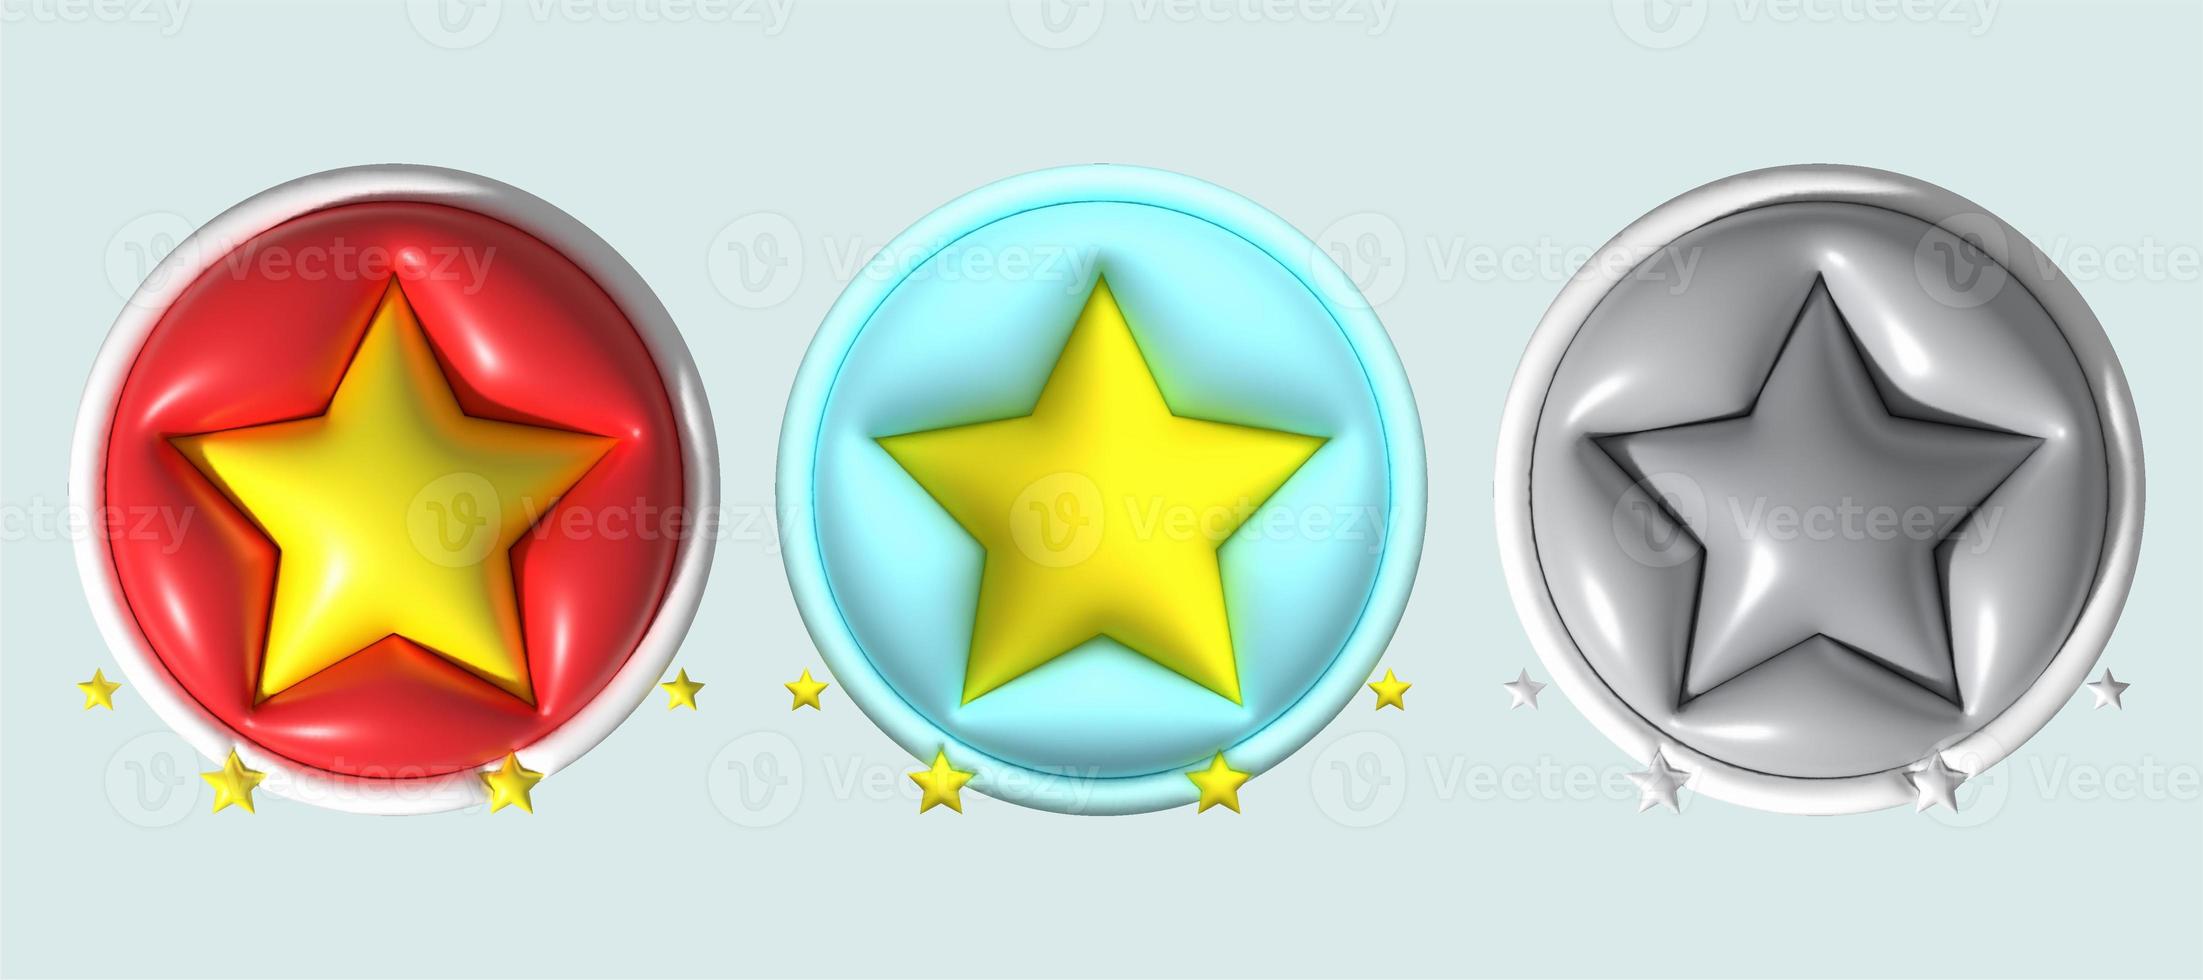 recensie 3d beoordeling sterren voor het beste uitstekend Diensten beoordeling voor tevredenheid. recensie voor kwaliteit klant beoordeling feedback. foto